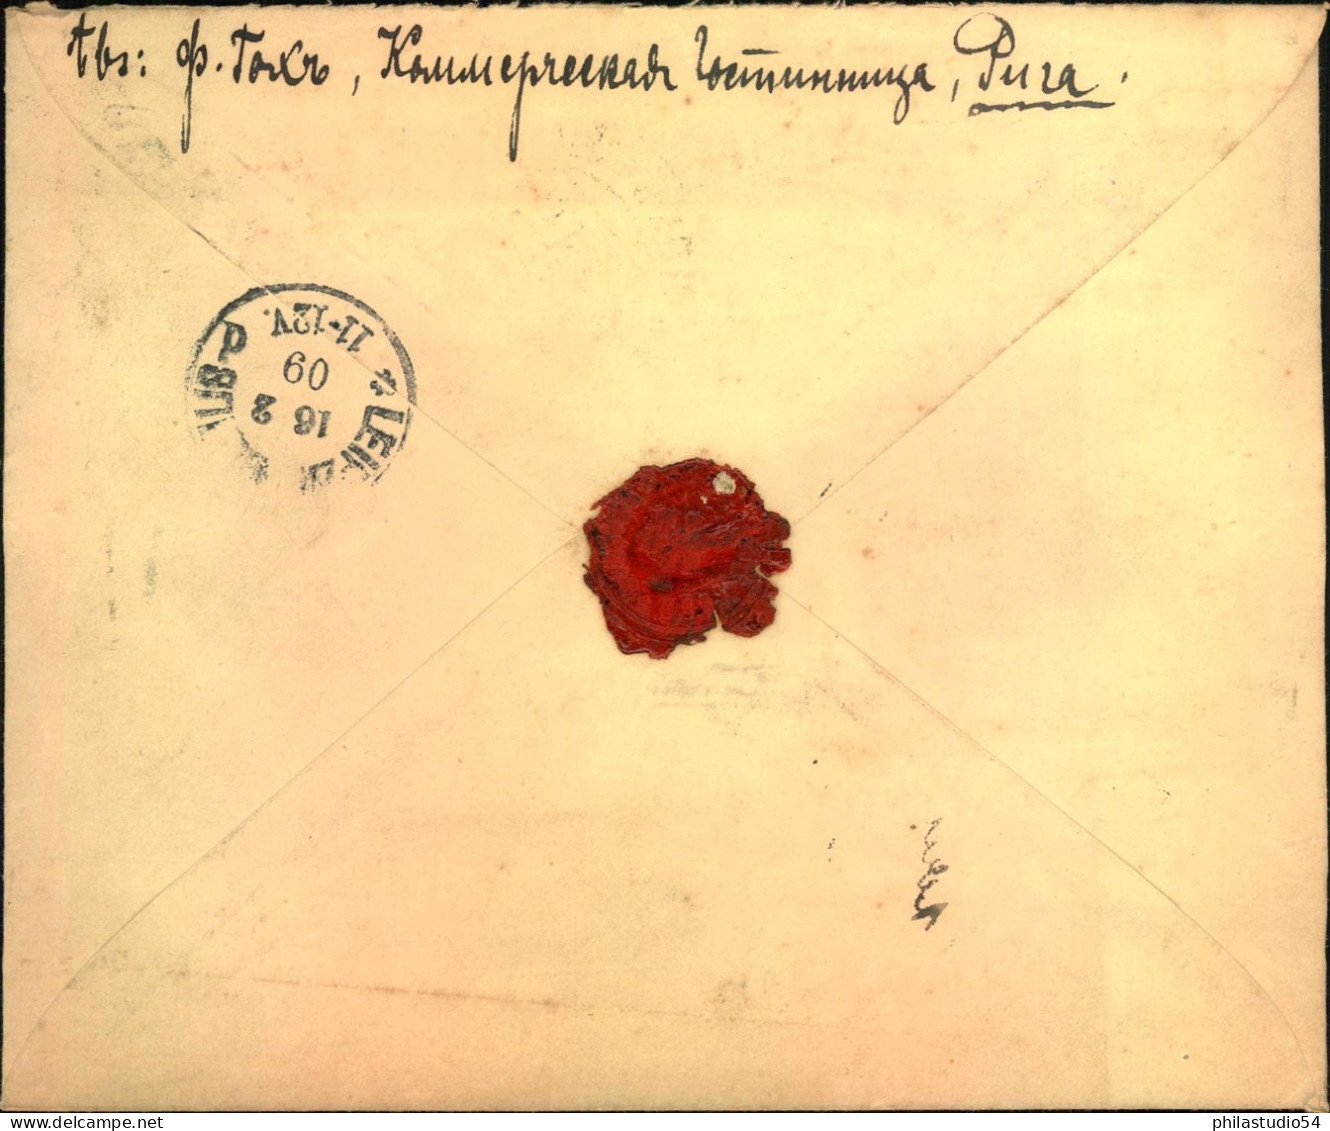 1909, Registered Letter From RIGA STATIO ToLeipzig - Lettland